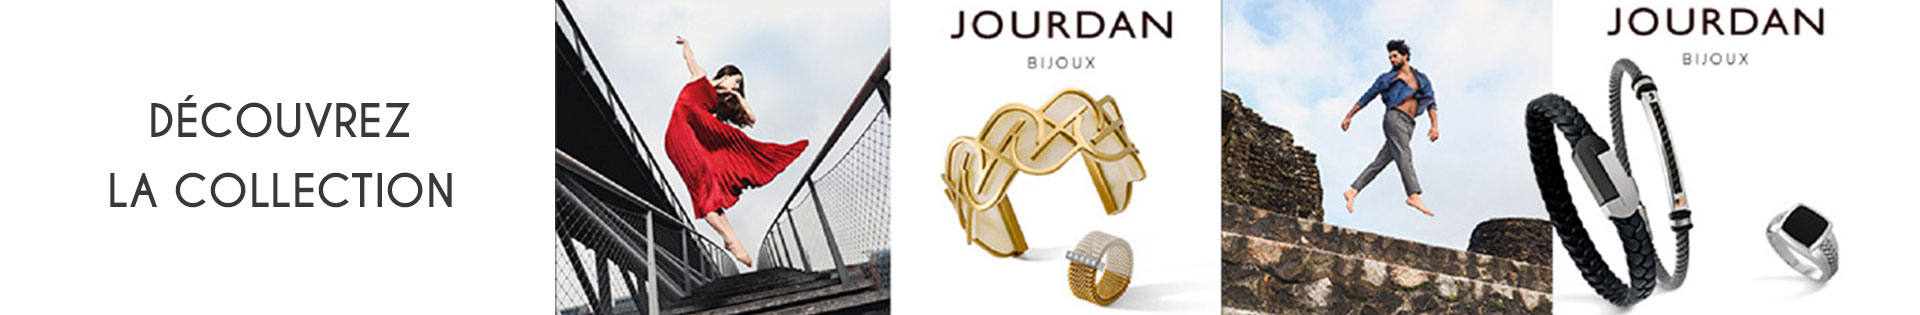 Marques de bijoux - Jourdan Bijoux - Bracelet